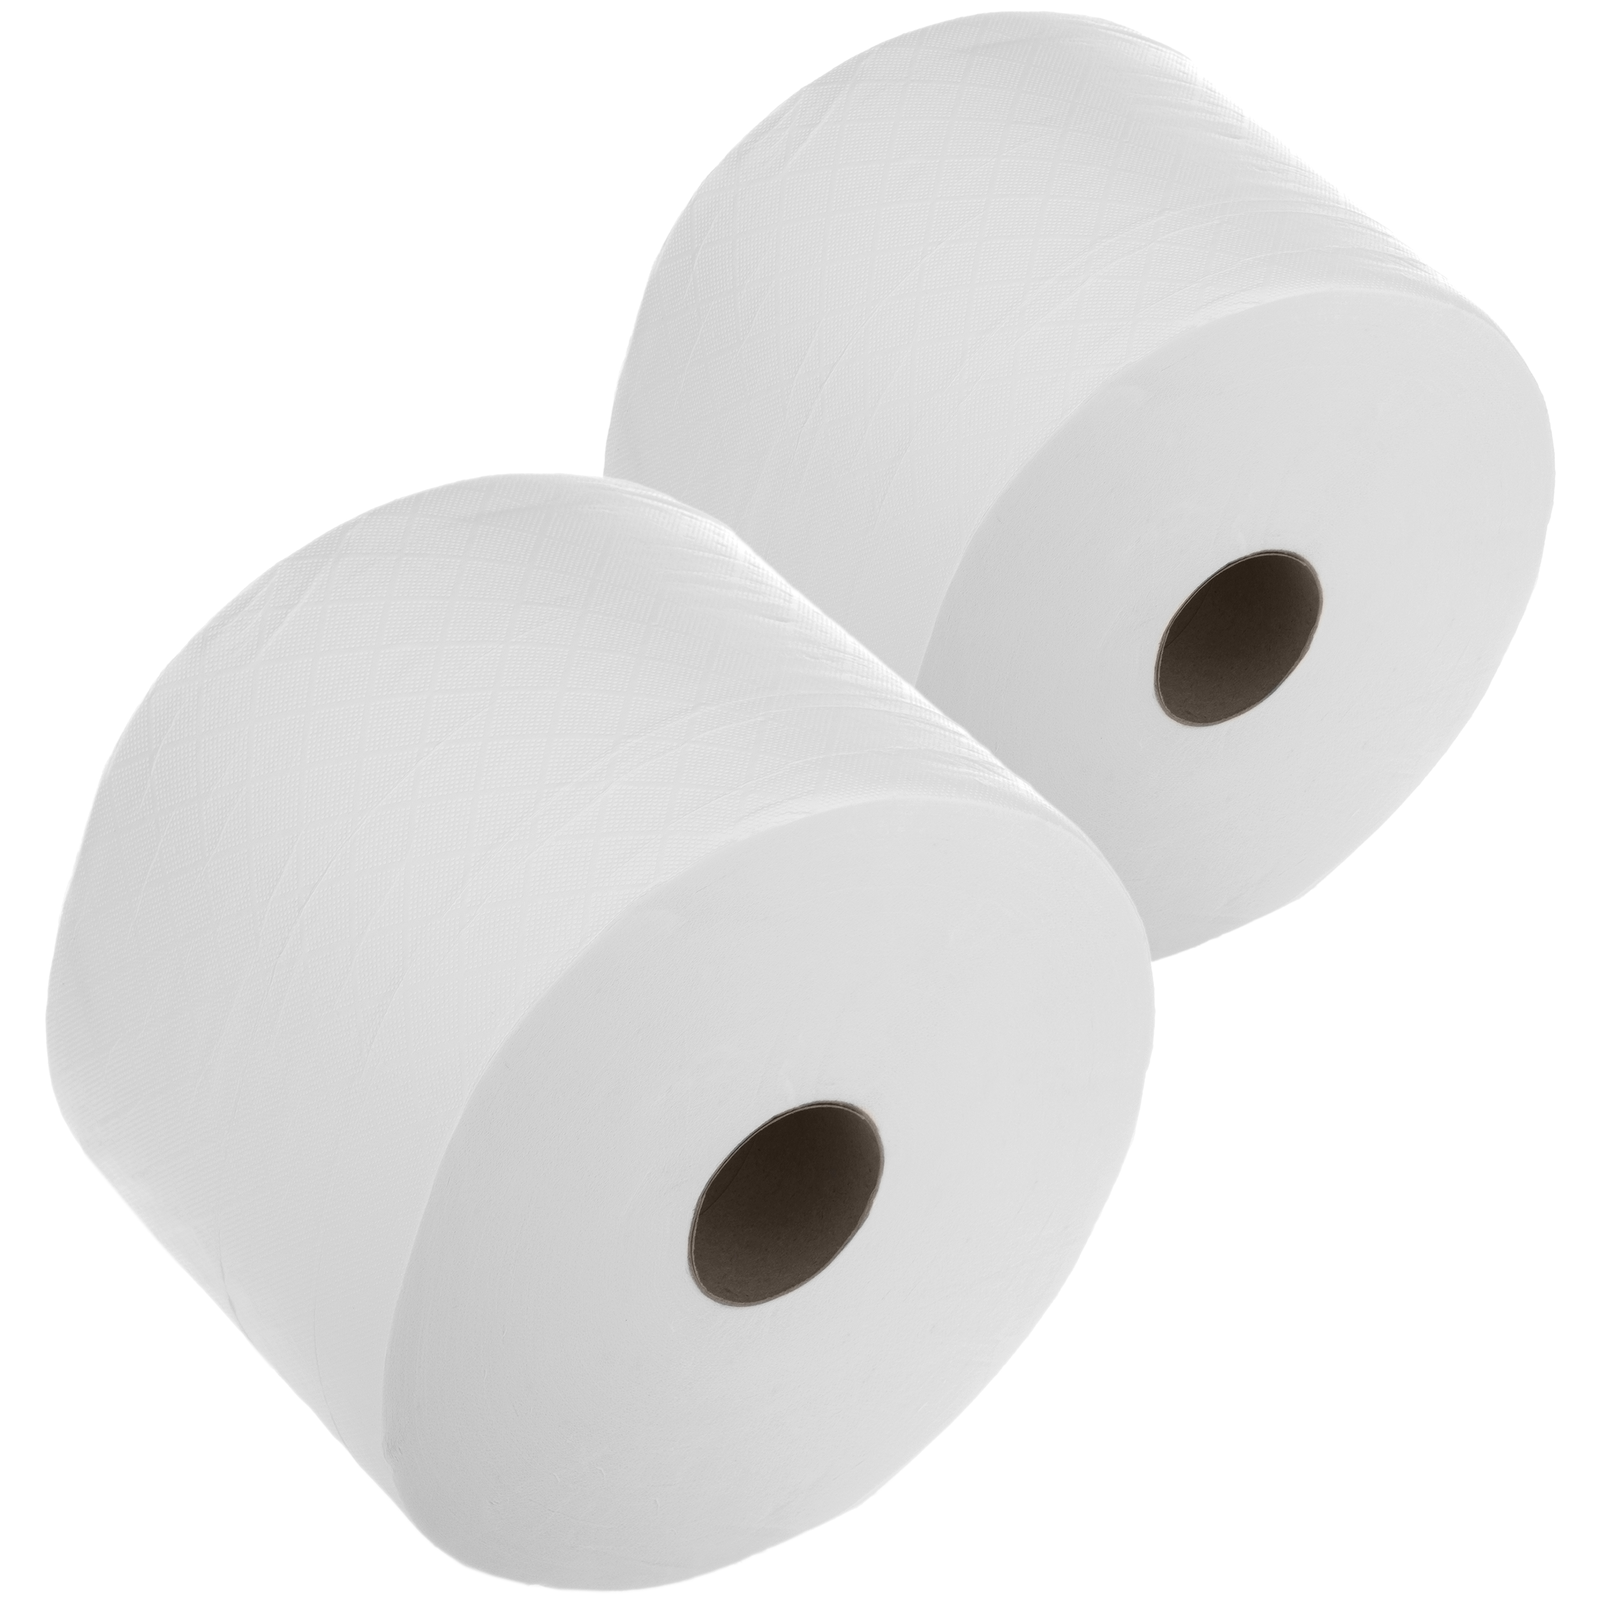 Portarrollos papel higiénico industrial ABS blanco especial hoja/hoja -  Máxima limpieza - Productos de Limpieza Industrial